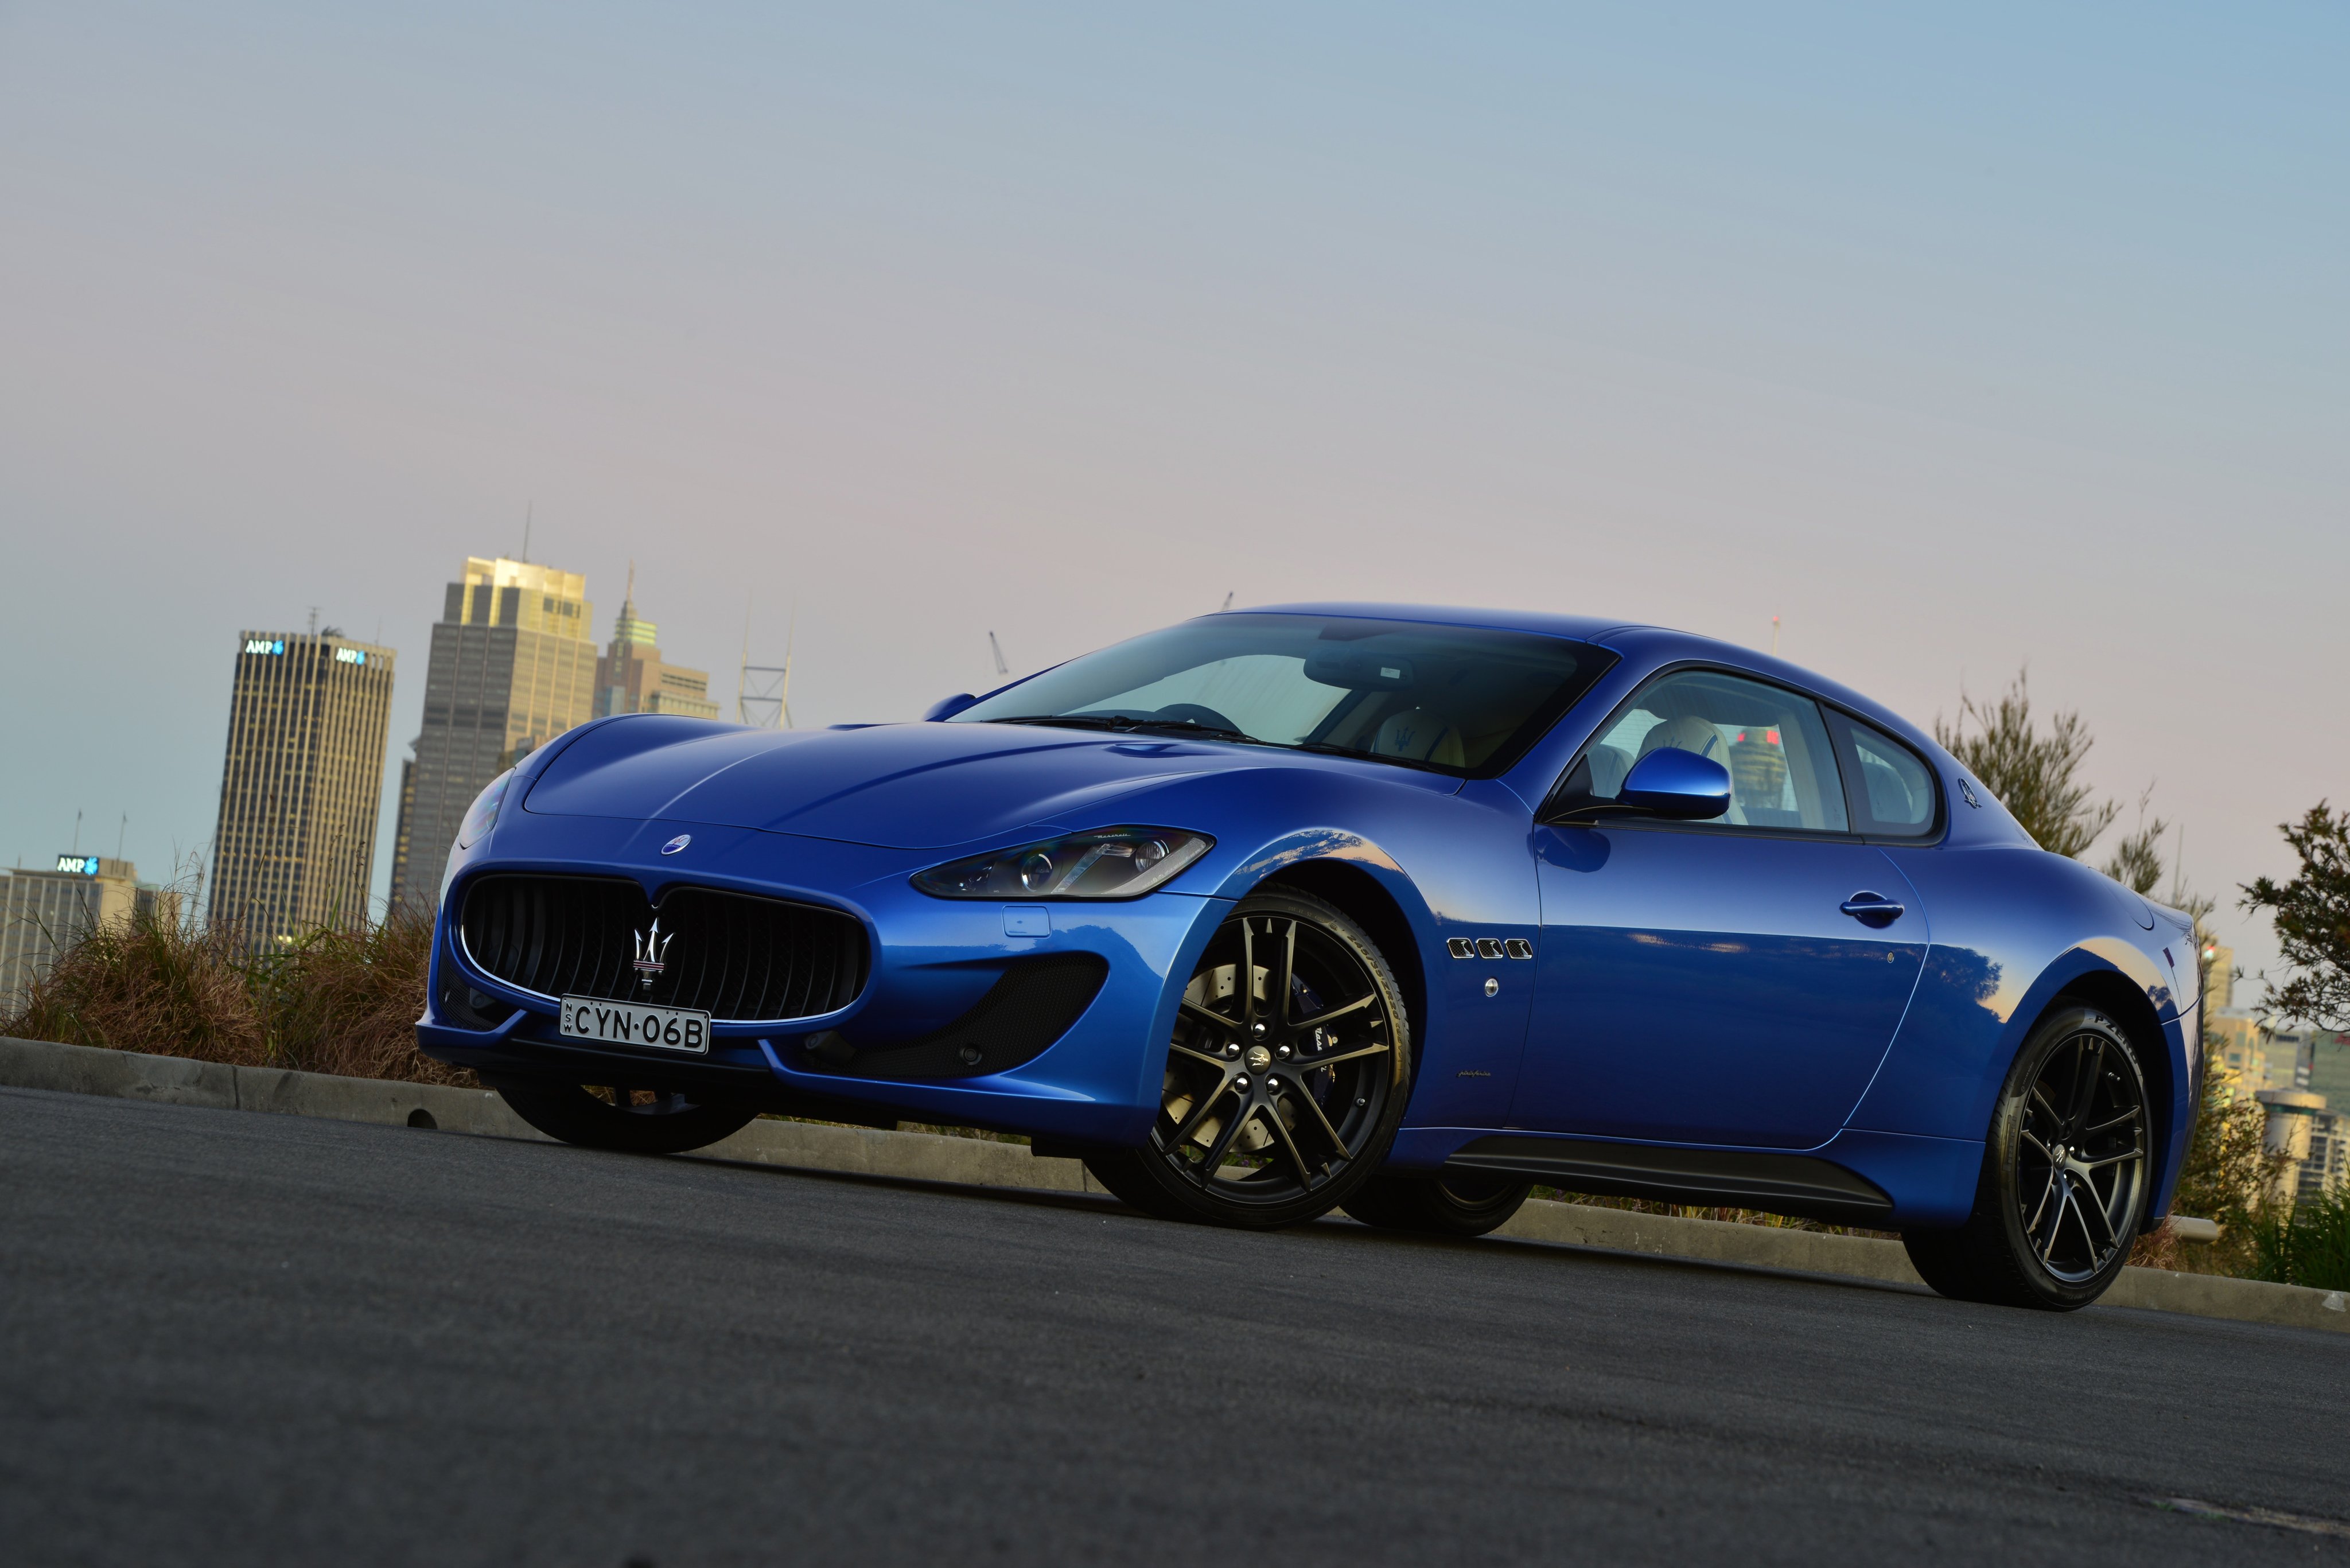 2015, Maserati, Granturismo, Mc, Sportline, Pininfarina, Supercar Wallpaper